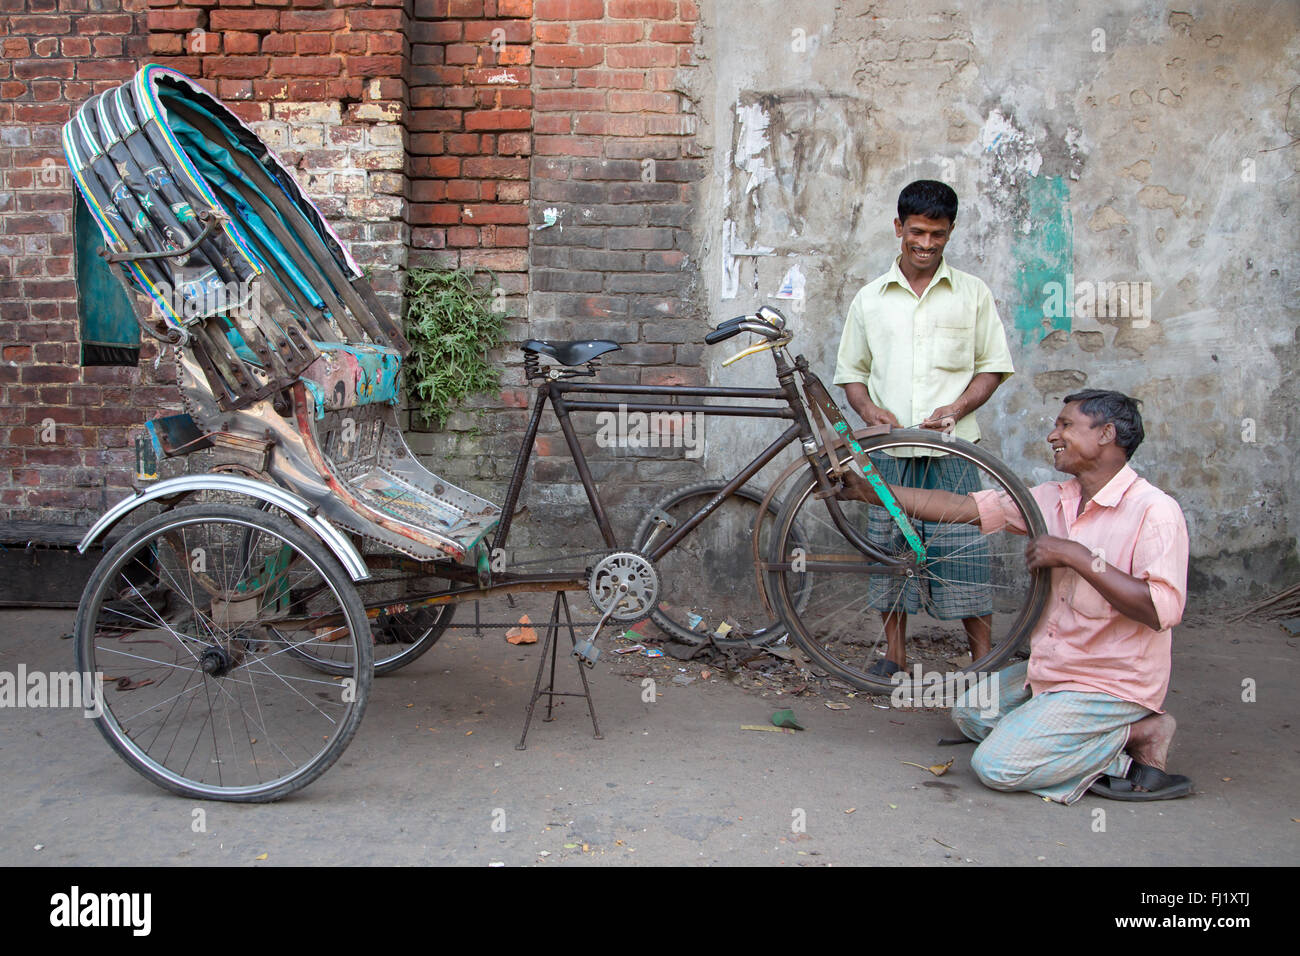 A smiling man réparations / modifications un rickshaw crevaison avec client heureux , Chittagong, Bangladesh Banque D'Images